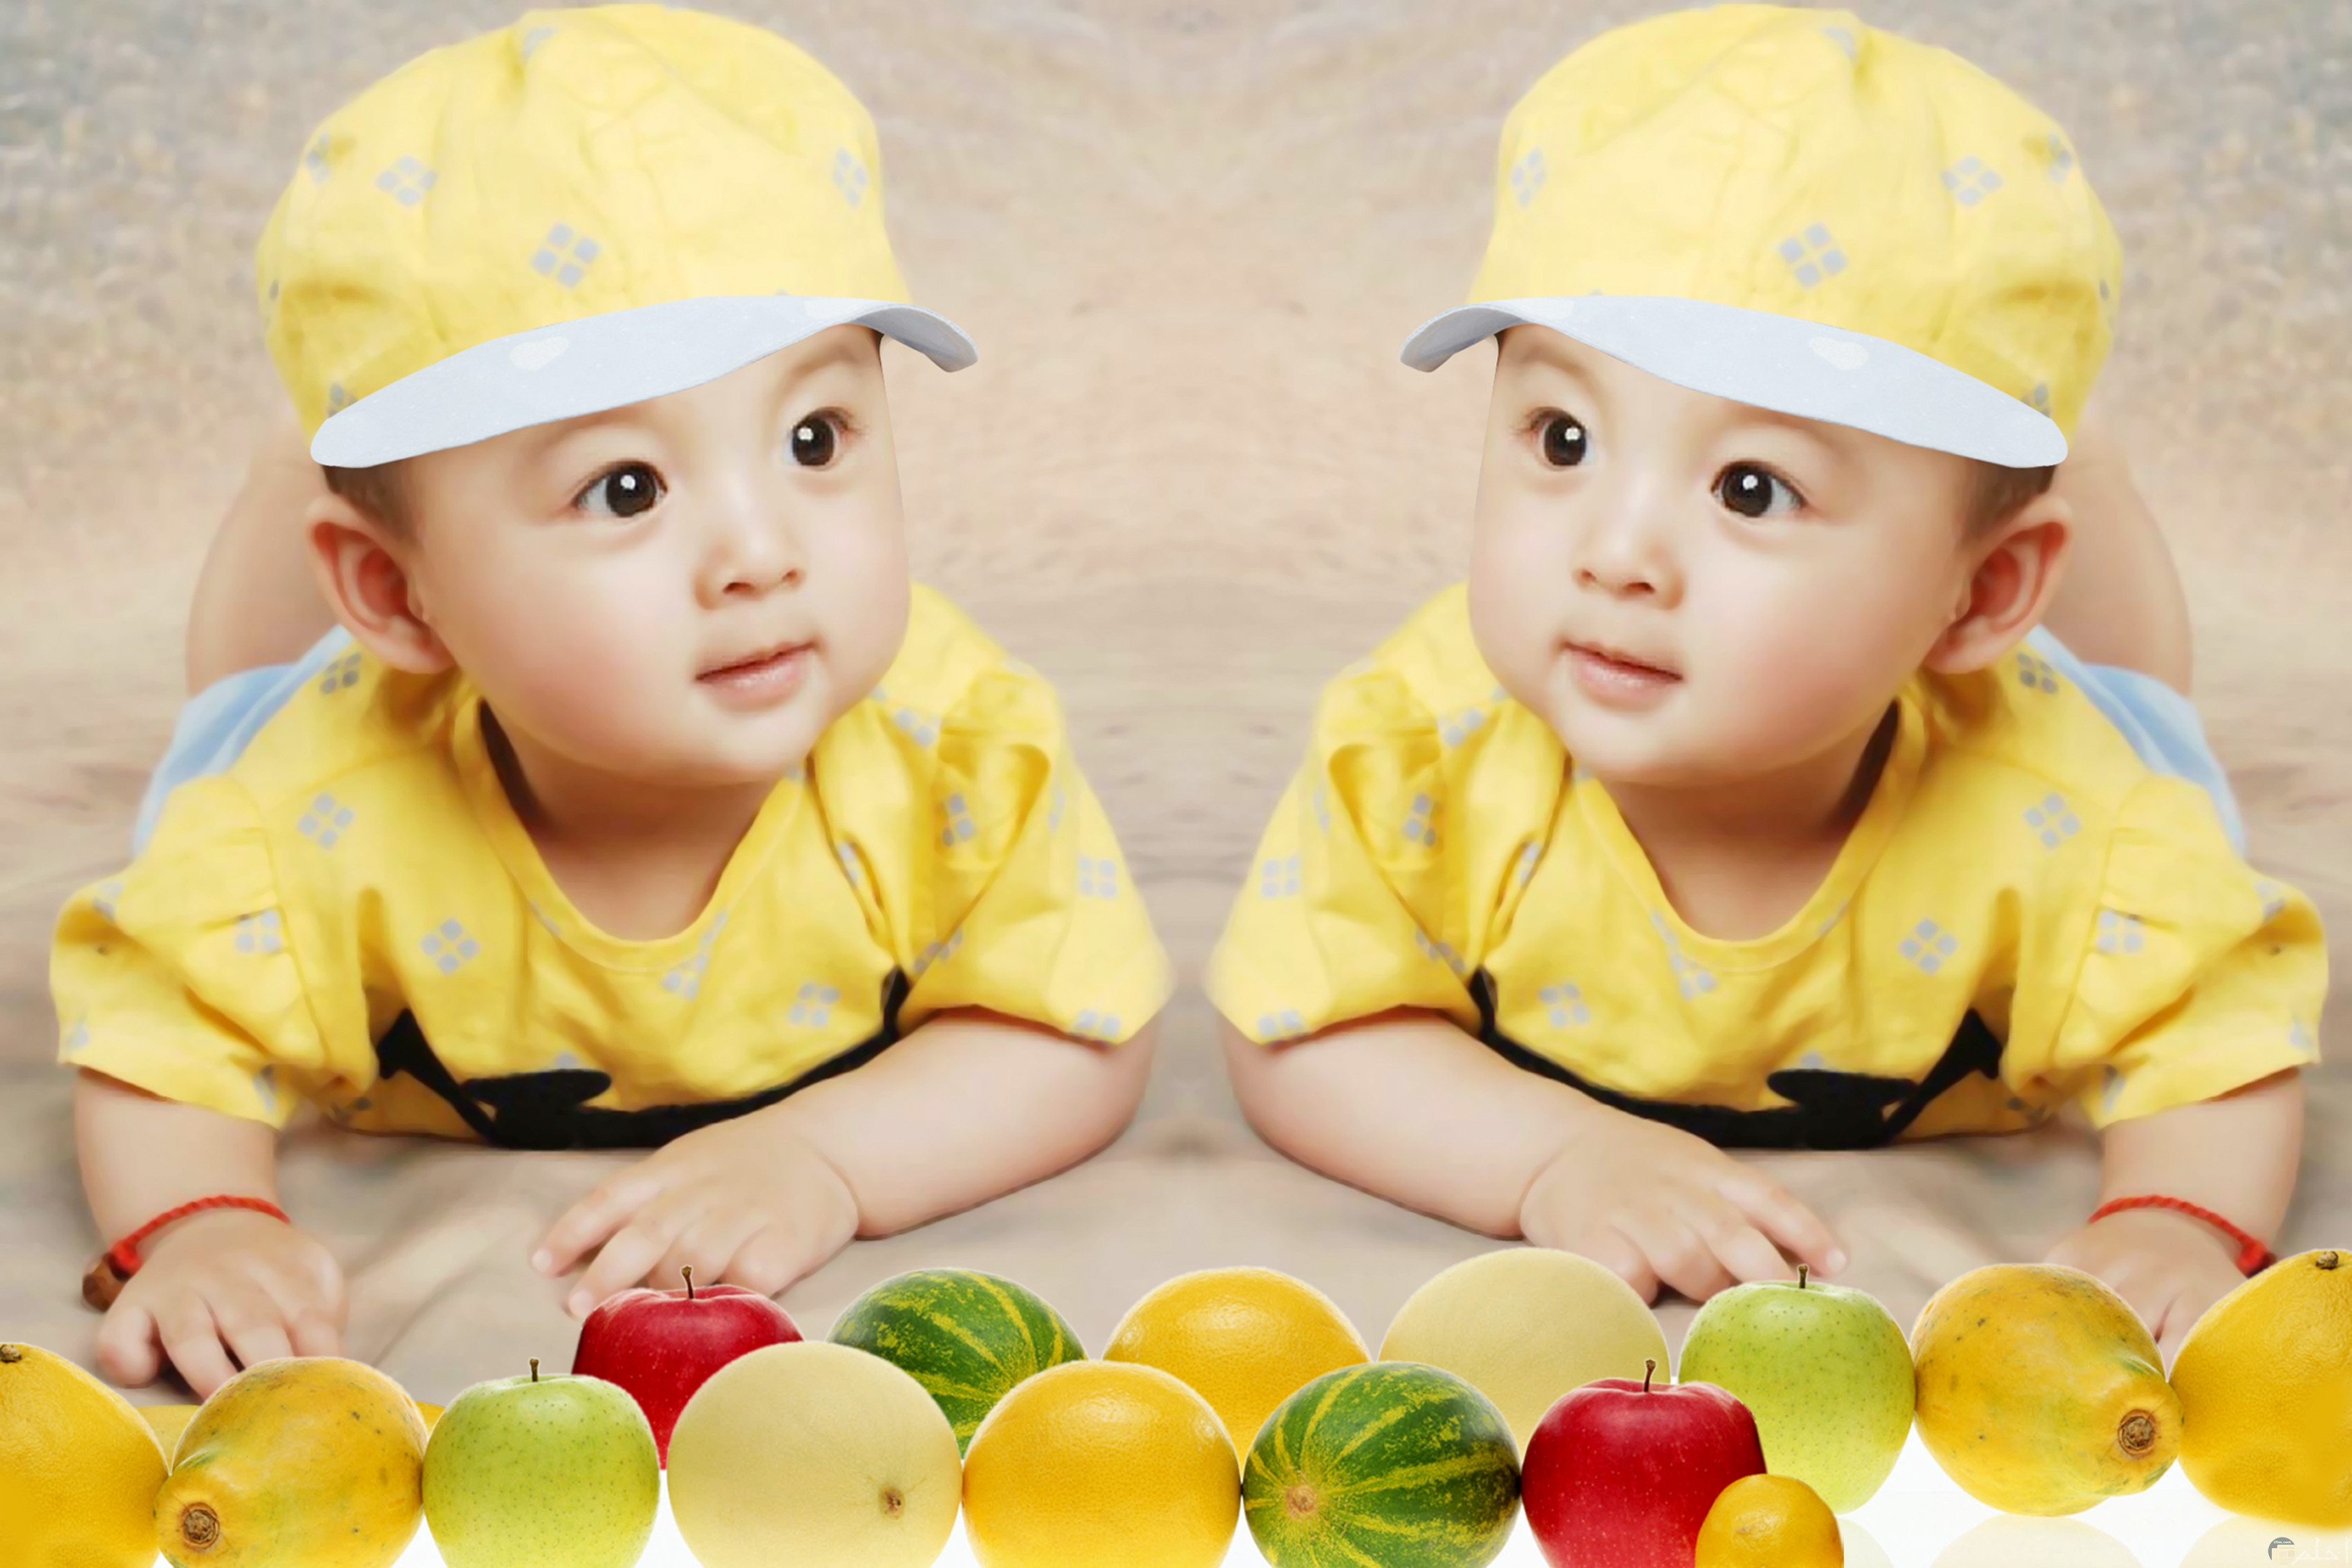 صور أطفال كيوت توائم صغيرين بنفس اللبس باللون الأصفر